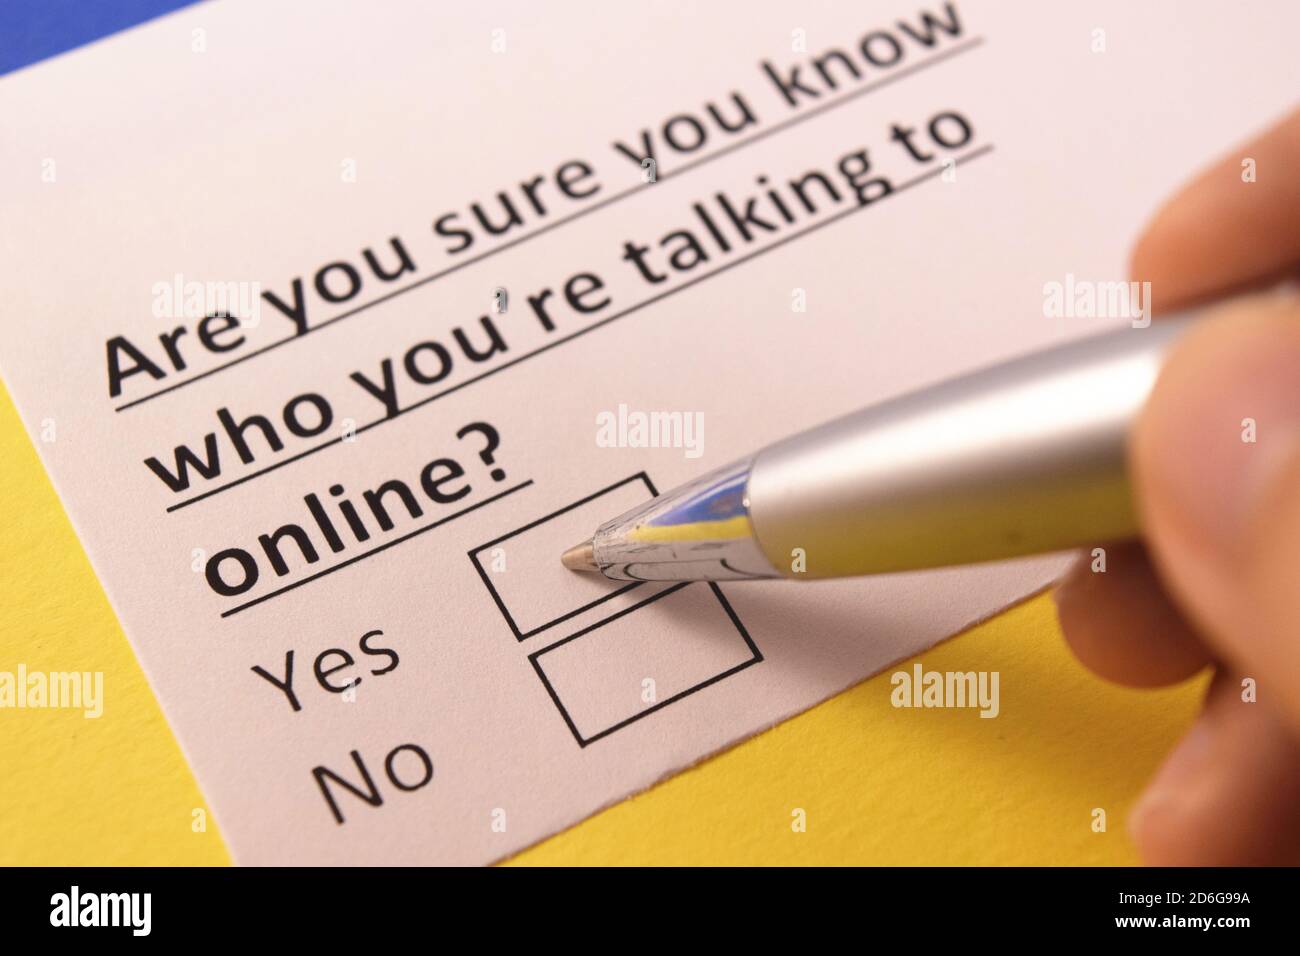 Sei sicuro di sapere con chi stai parlando online? Sì o no? Foto Stock